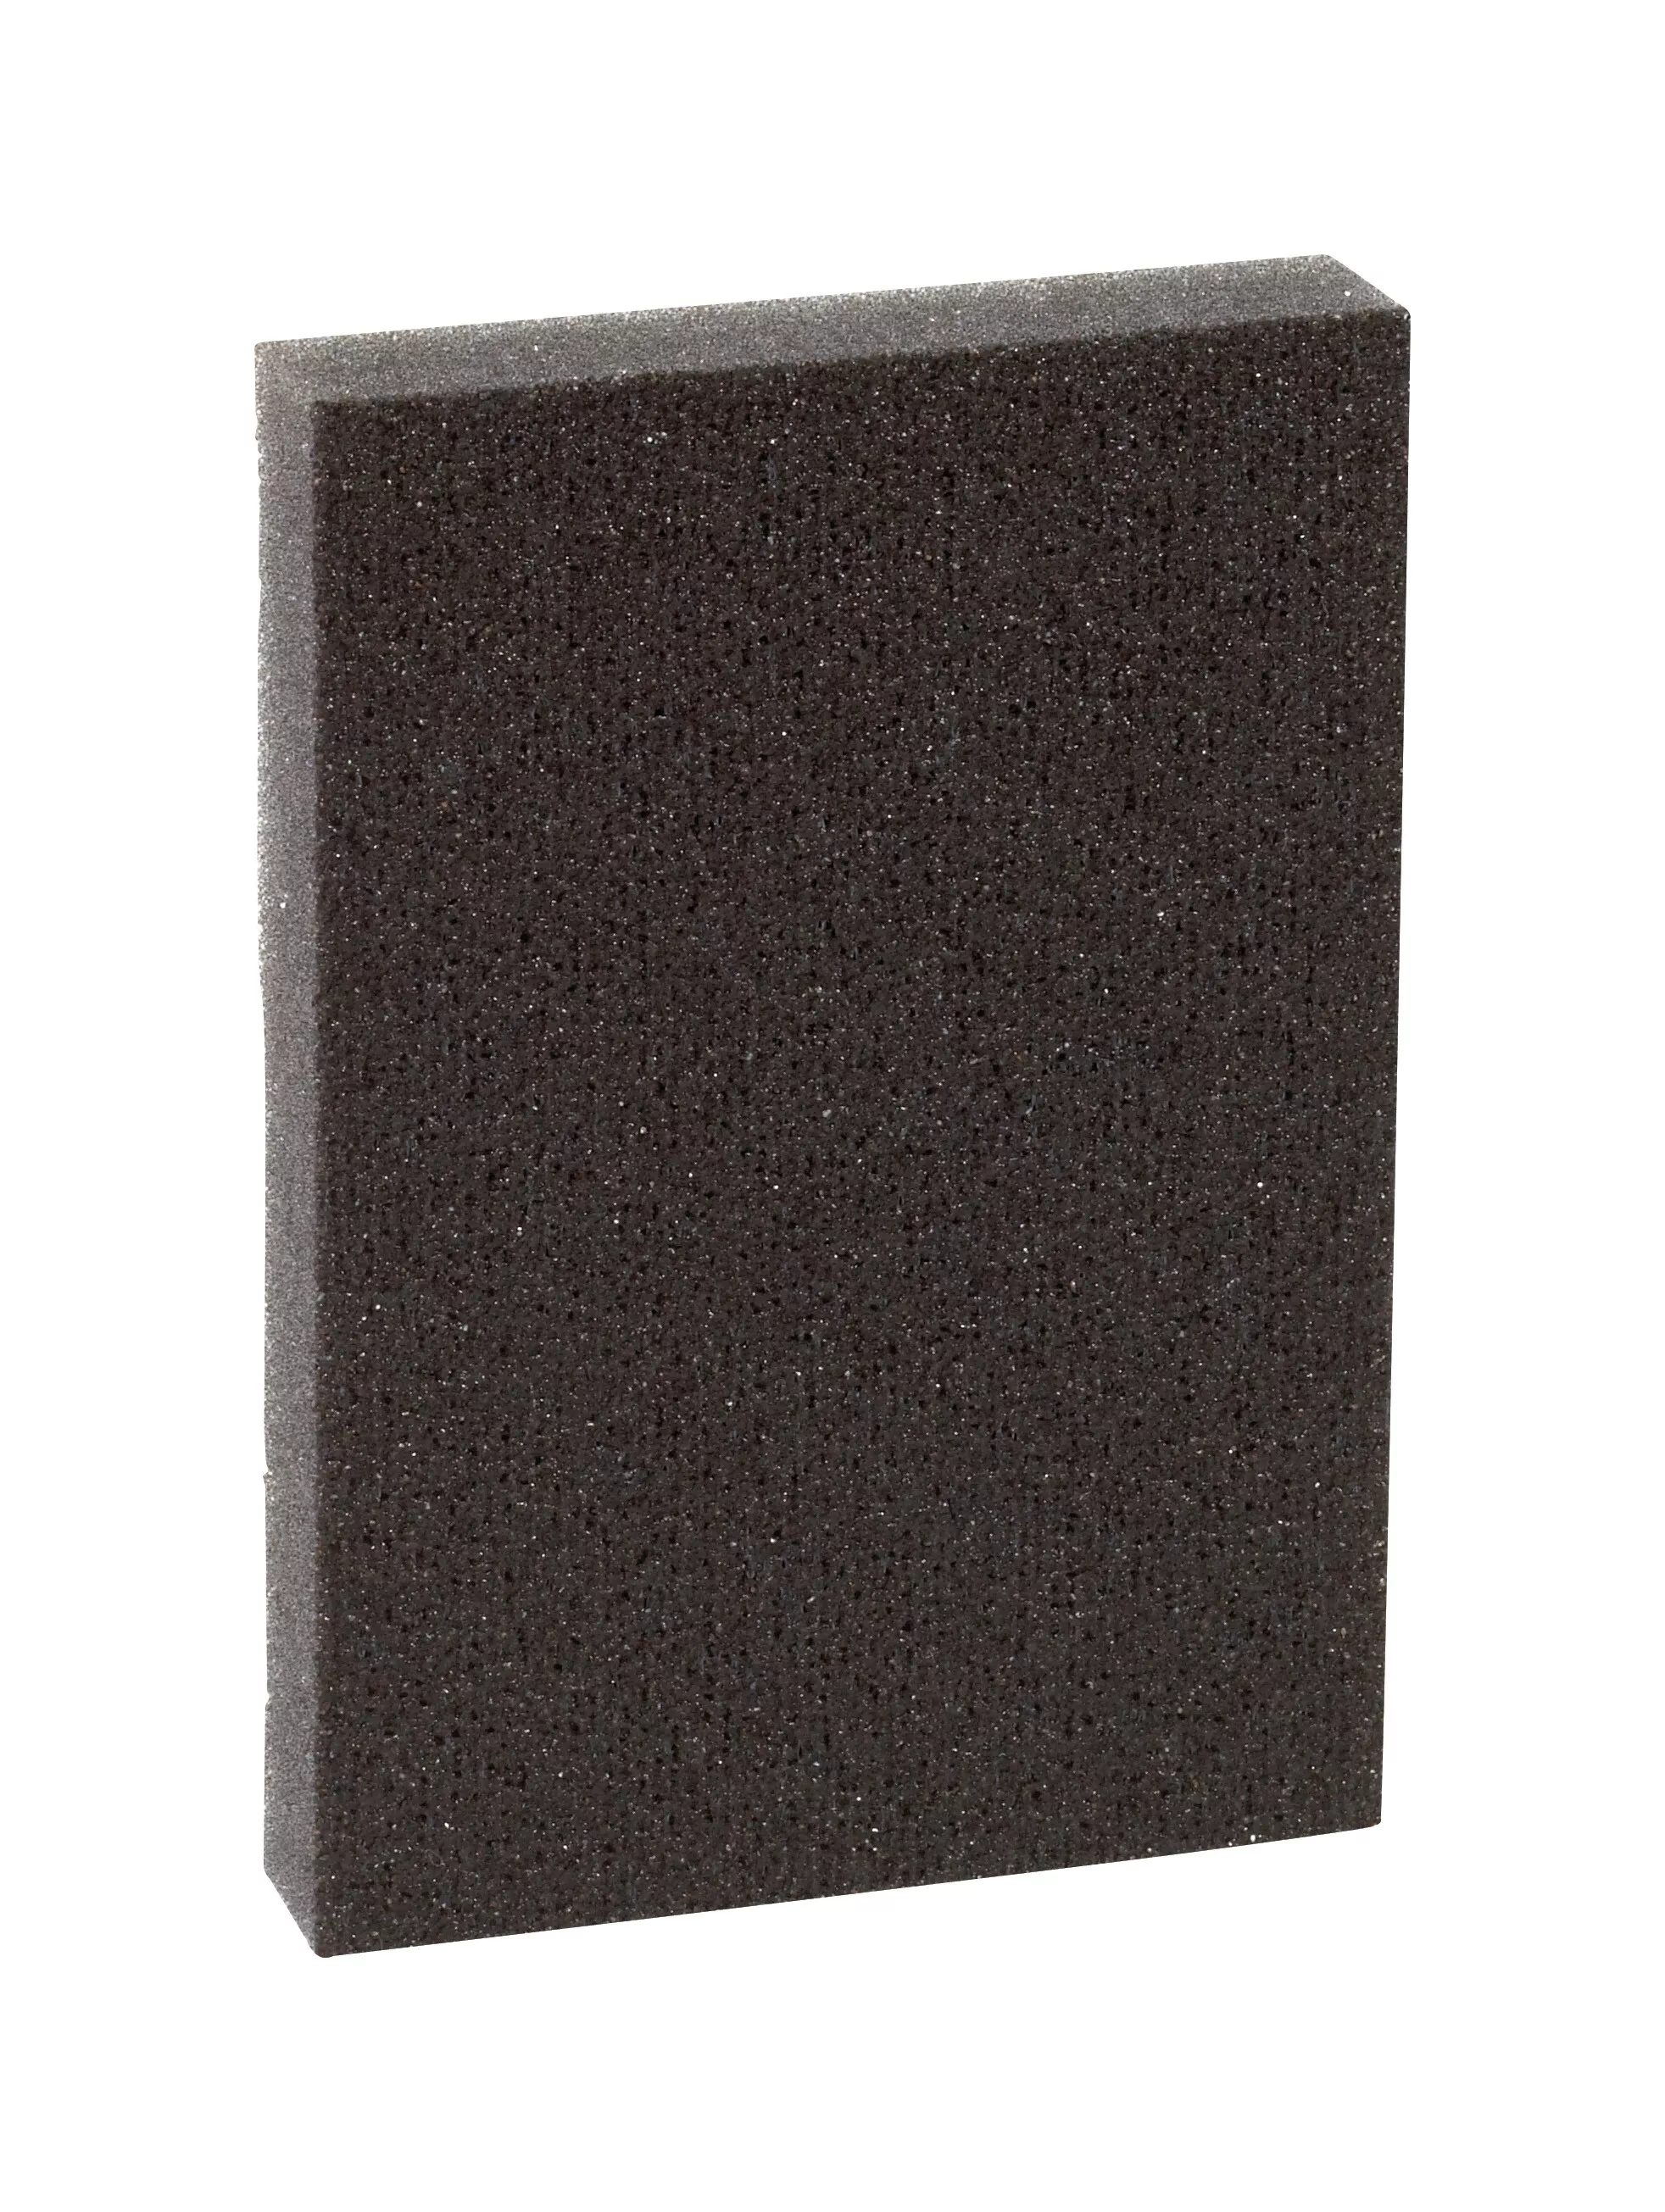 3M™ Pro-Pad™ Sanding Sponge, PRPD-60, 2.88 in x 4 in x .5 in, 60 Grit,
54/cs